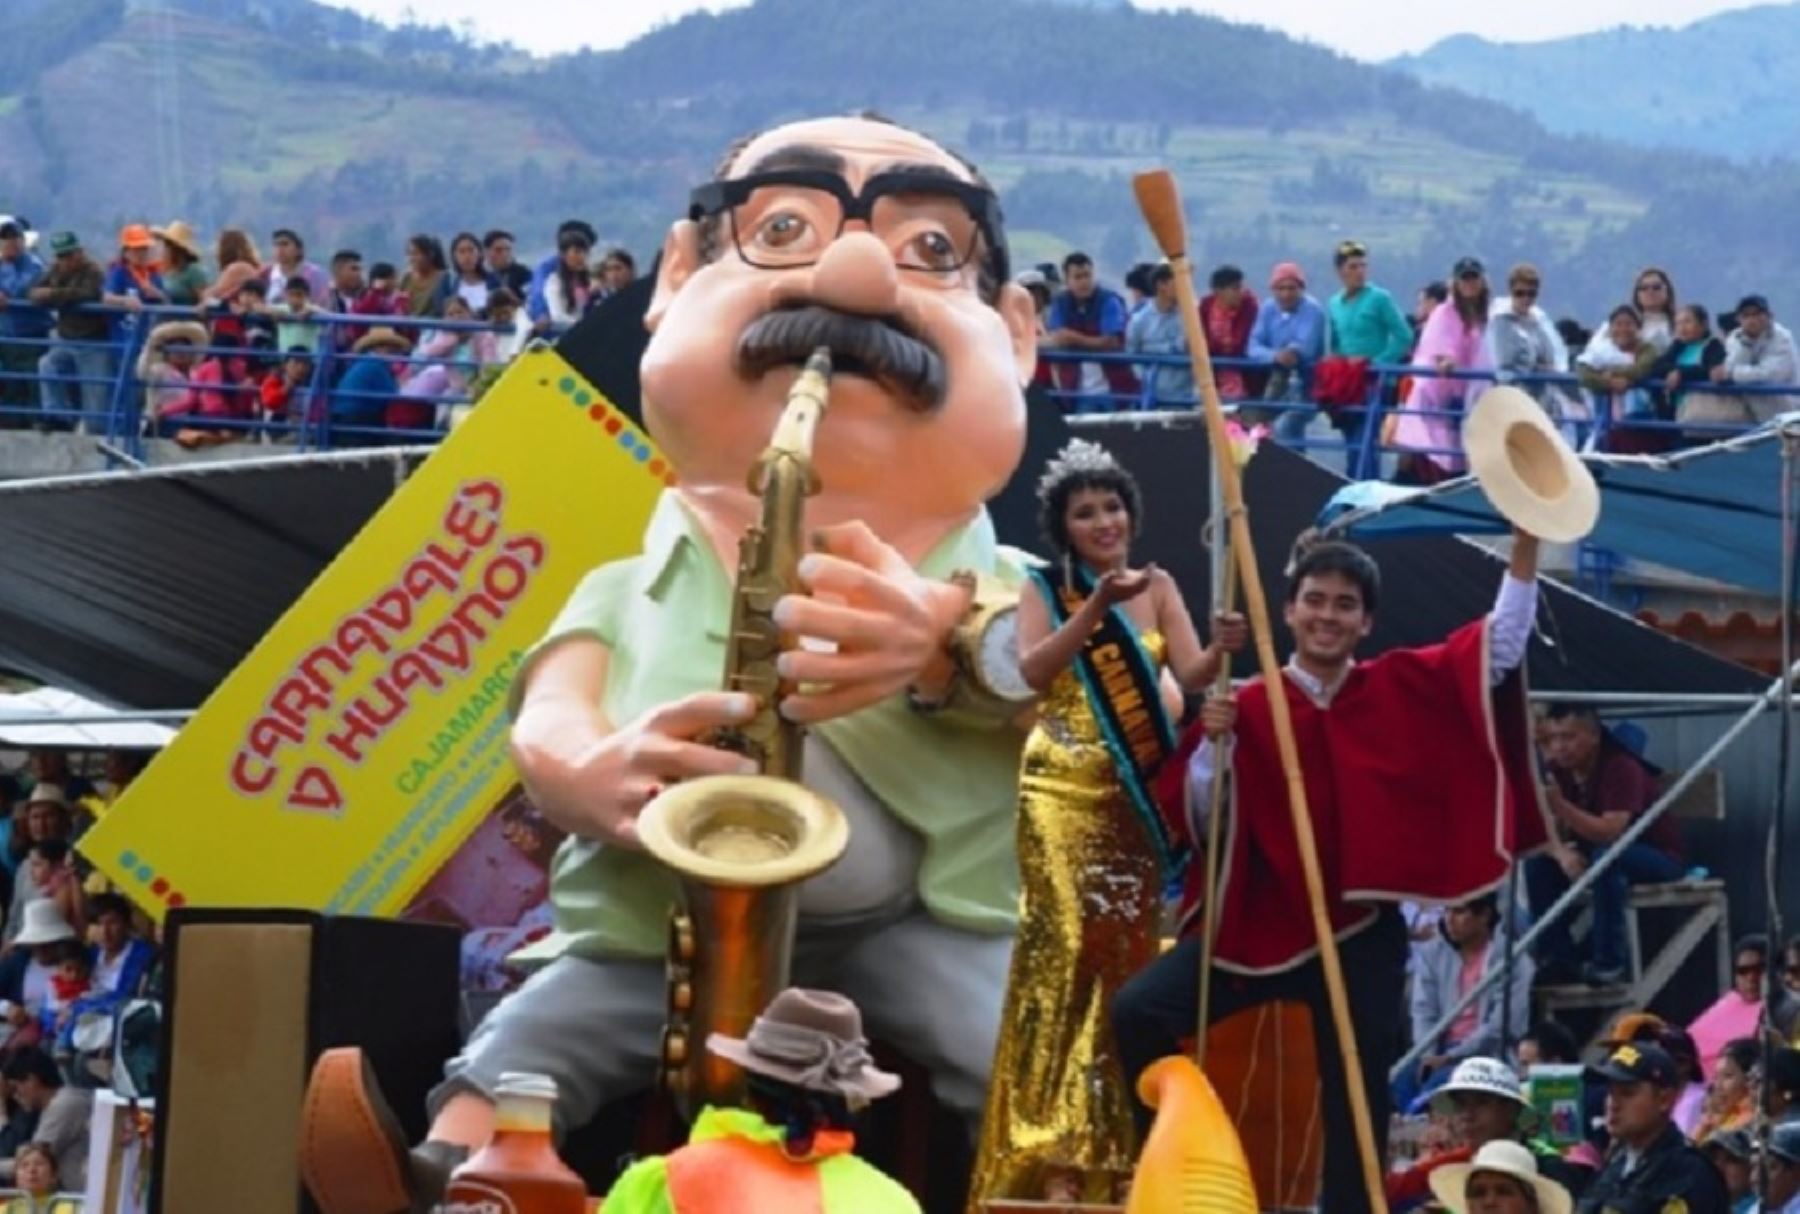 La organización del tradicional carnaval de Cajamarca vuelve tras dos años de pandemia del covid-19 y a la fecha más de 90% de la capacidad hotelera ha sido reservada por turistas nacionales e internacionales que arribarán a esta ciudad para disfrutar de la fiesta del Rey Momo, programado para la quincena de febrero.